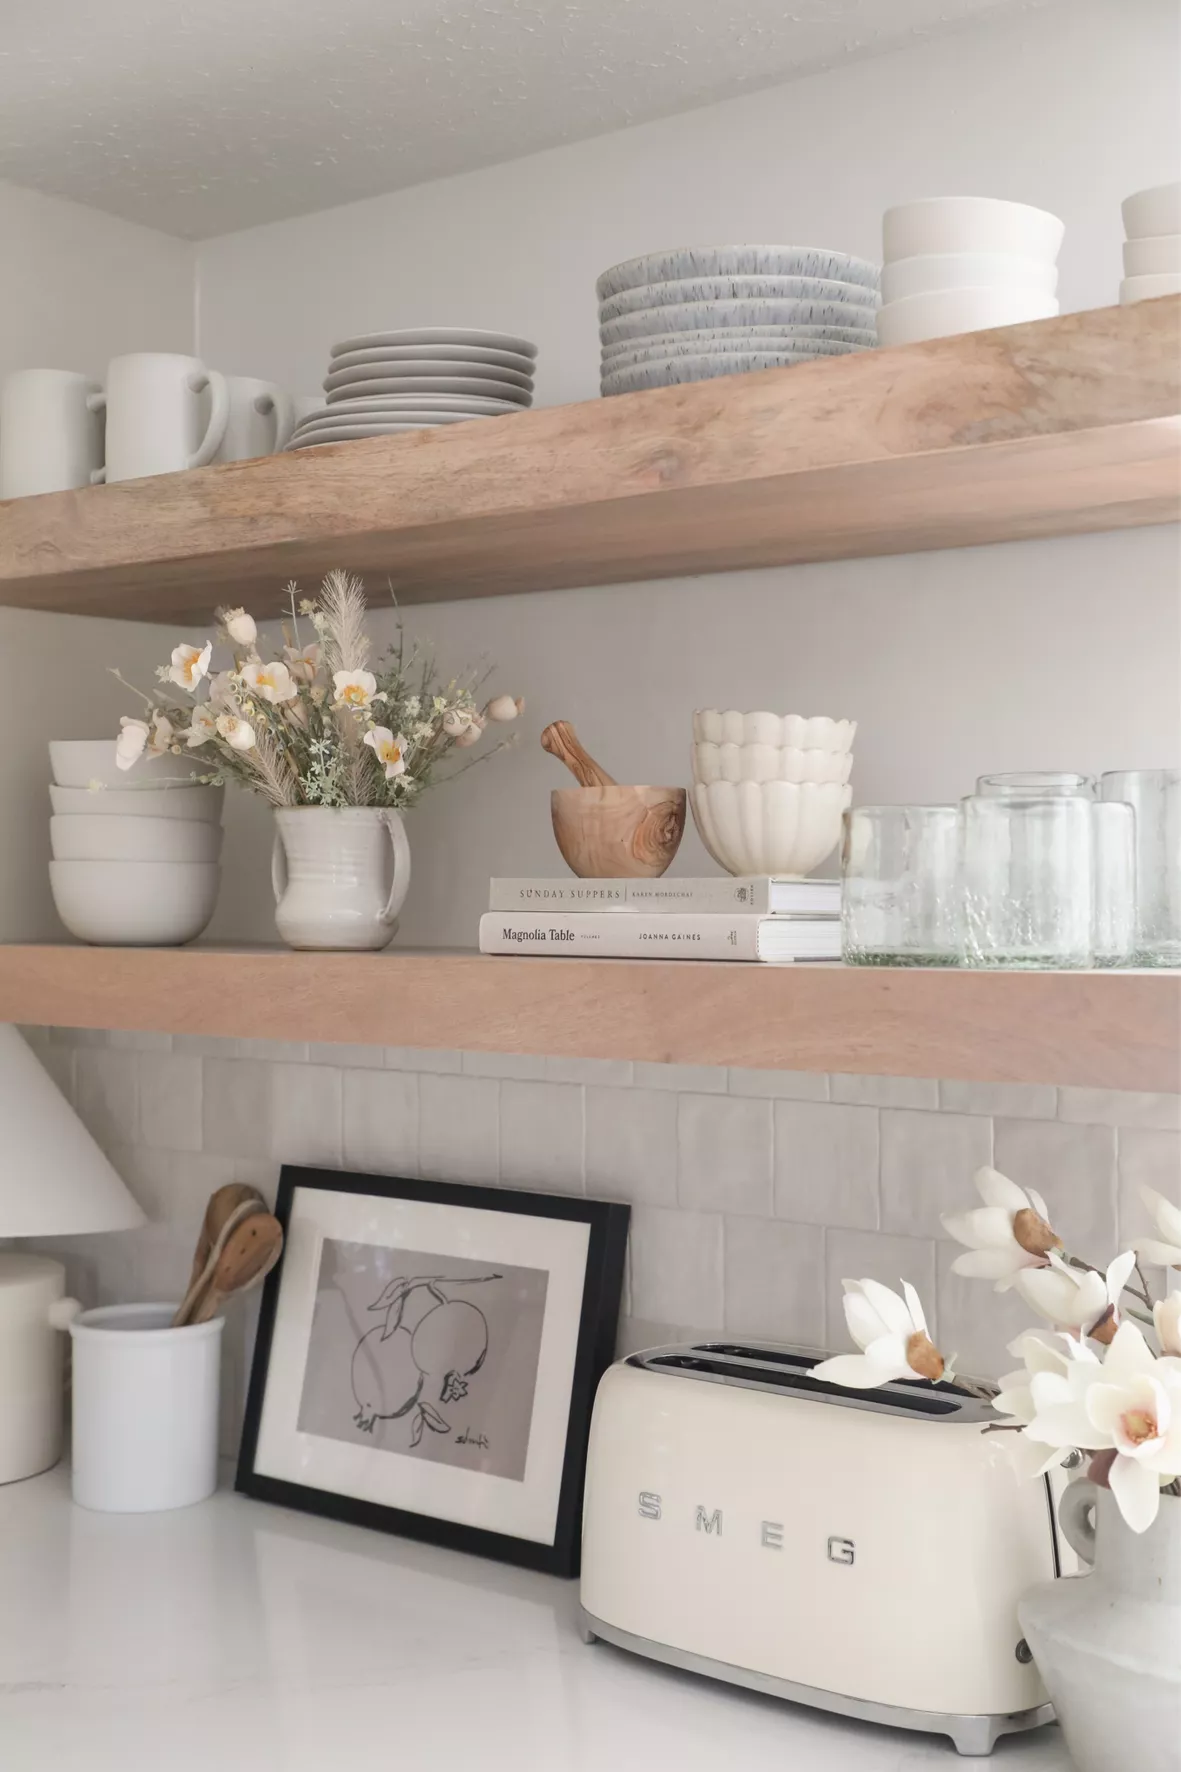 Stoneware Utensil Holder Cream - Hearth & Hand™ with Magnolia  Kitchen  countertop decor, Kitchen counter decor, Home decor kitchen